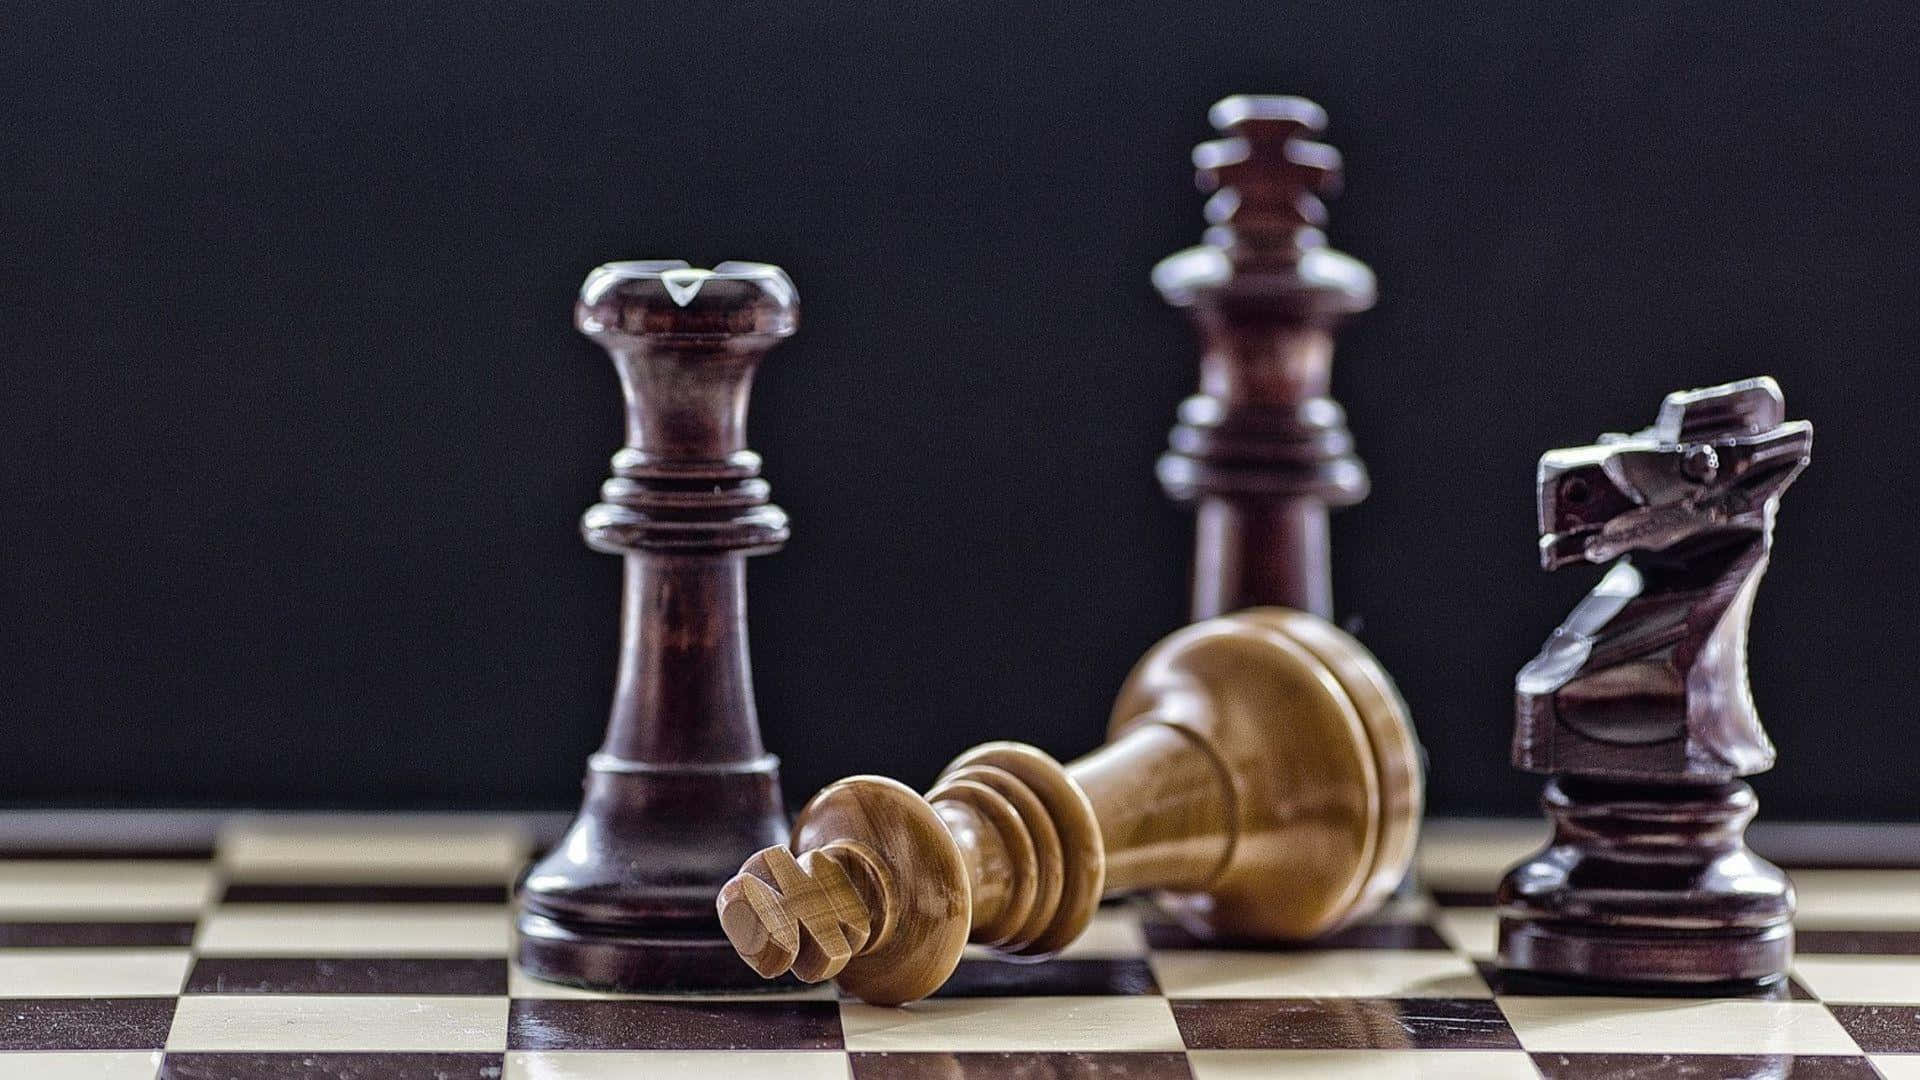 'abatalha Começou: Jogue Um Jogo Inteligente De Xadrez'